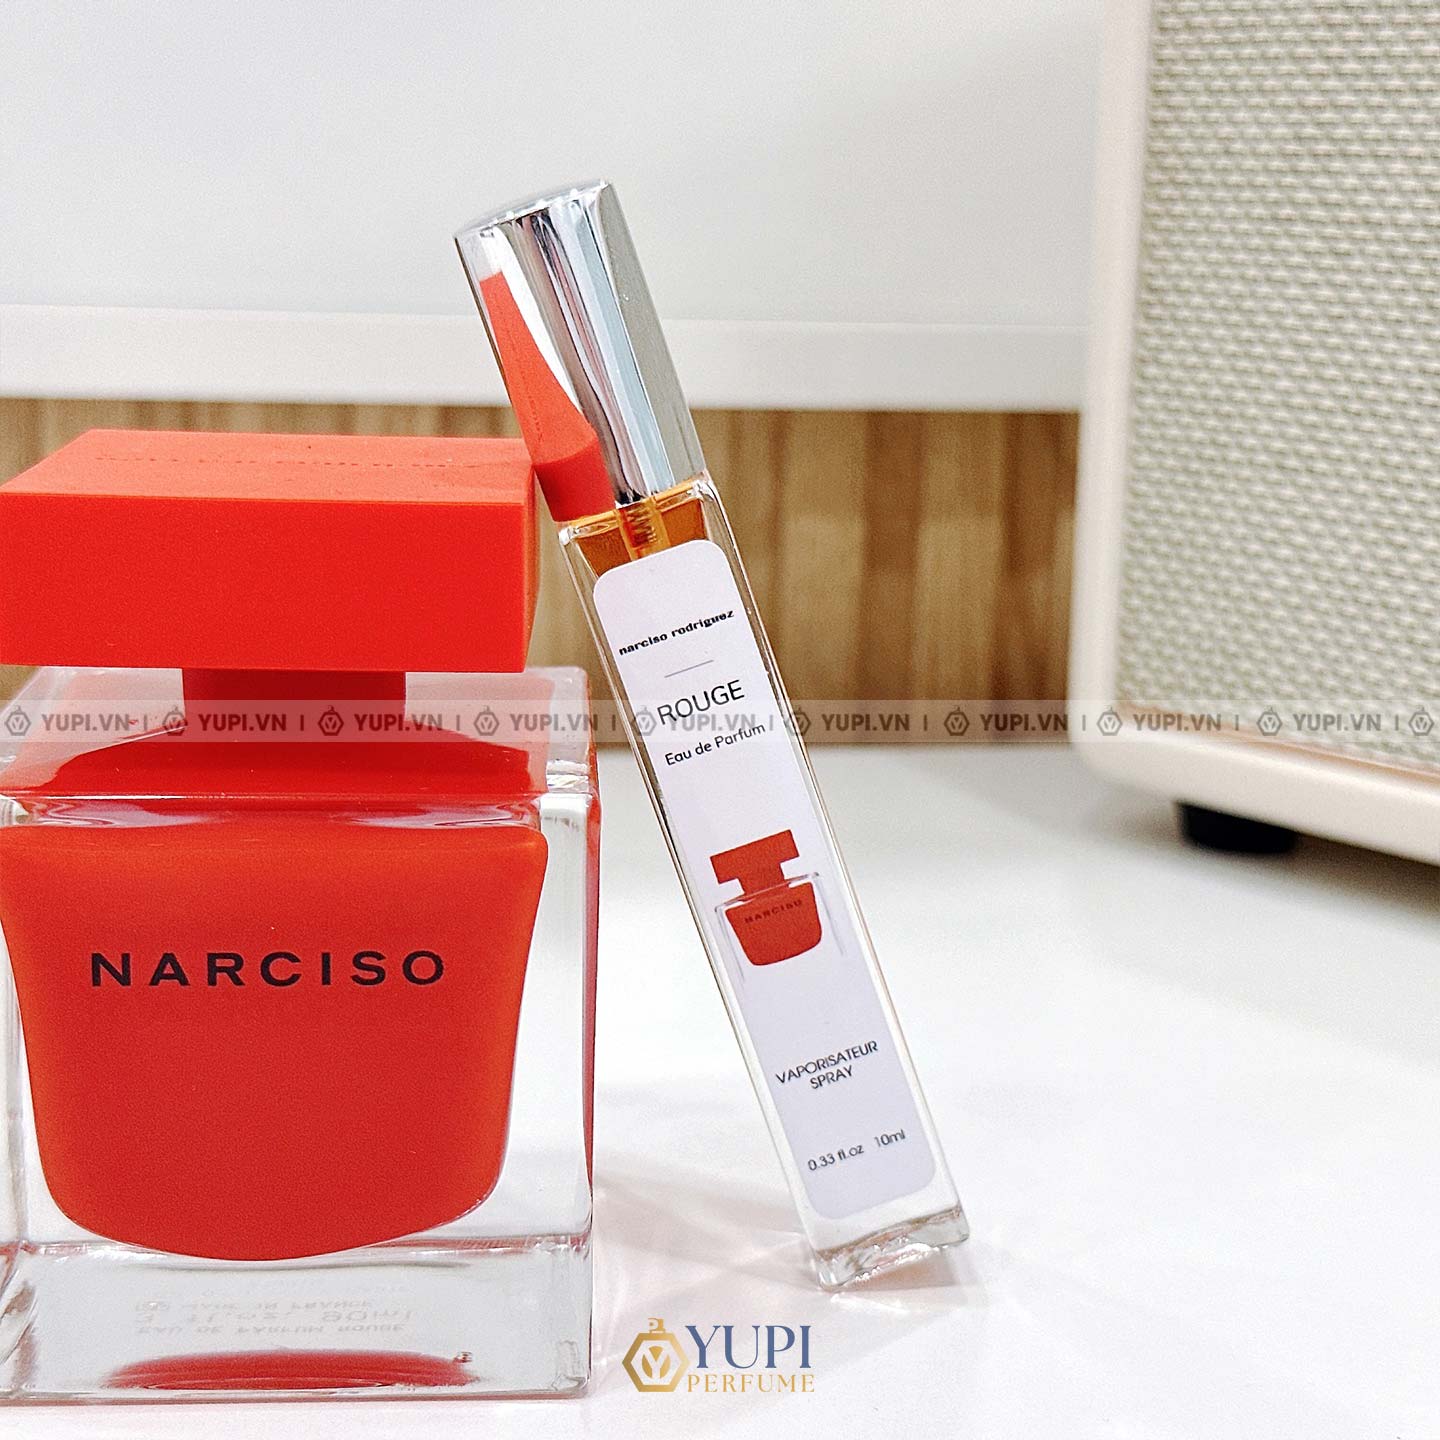 narciso rodriguez rouge eau de parfum chiết 10ml